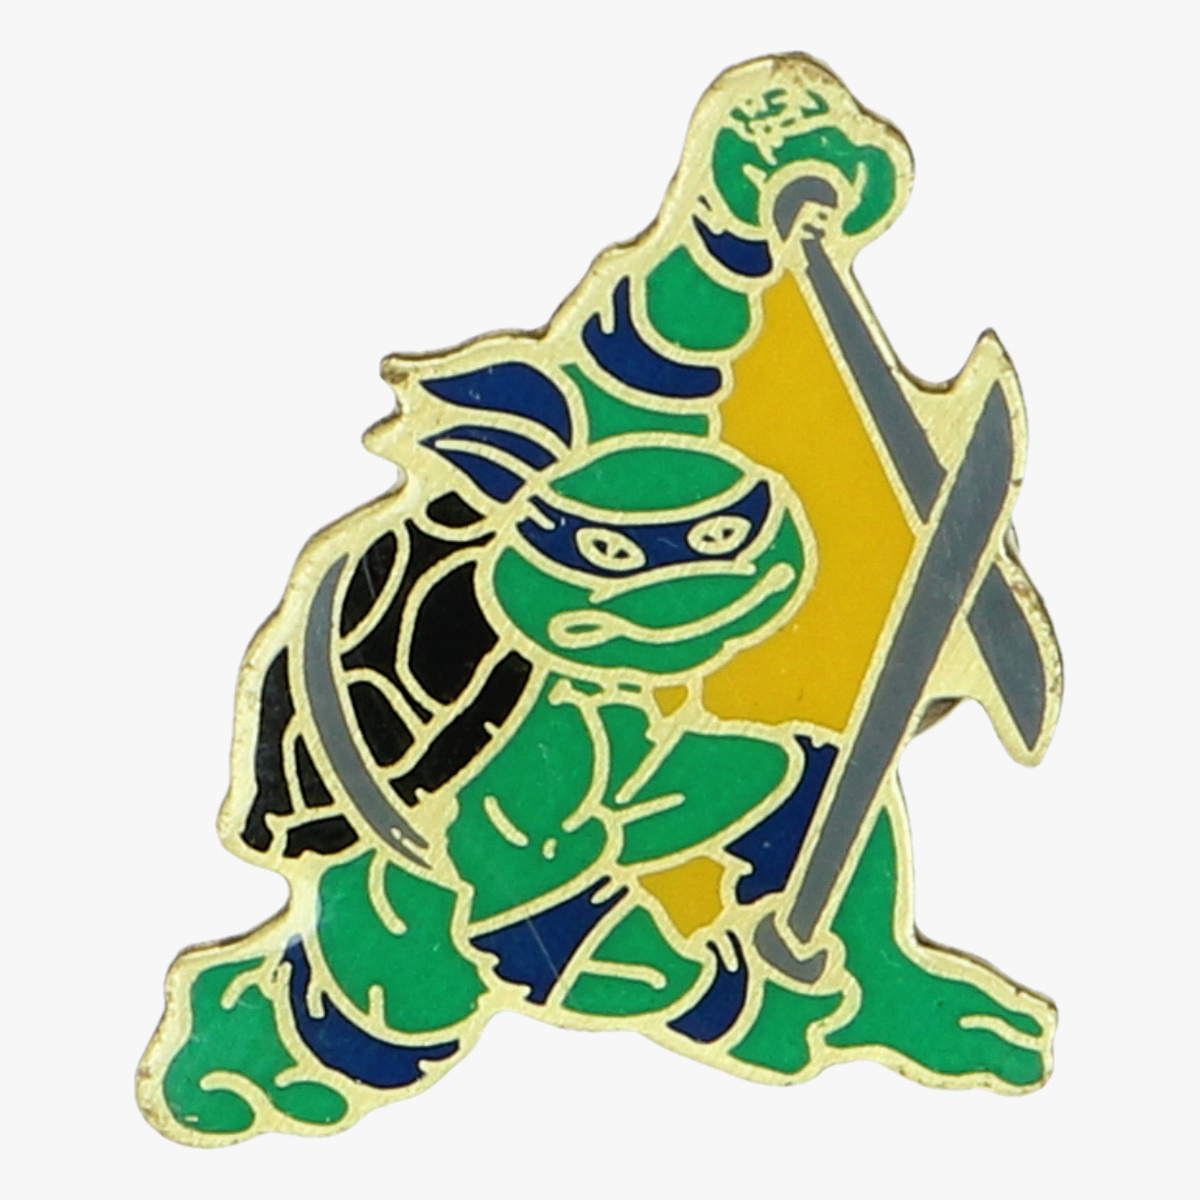 Afbeeldingen van speltje ninja turtles1989